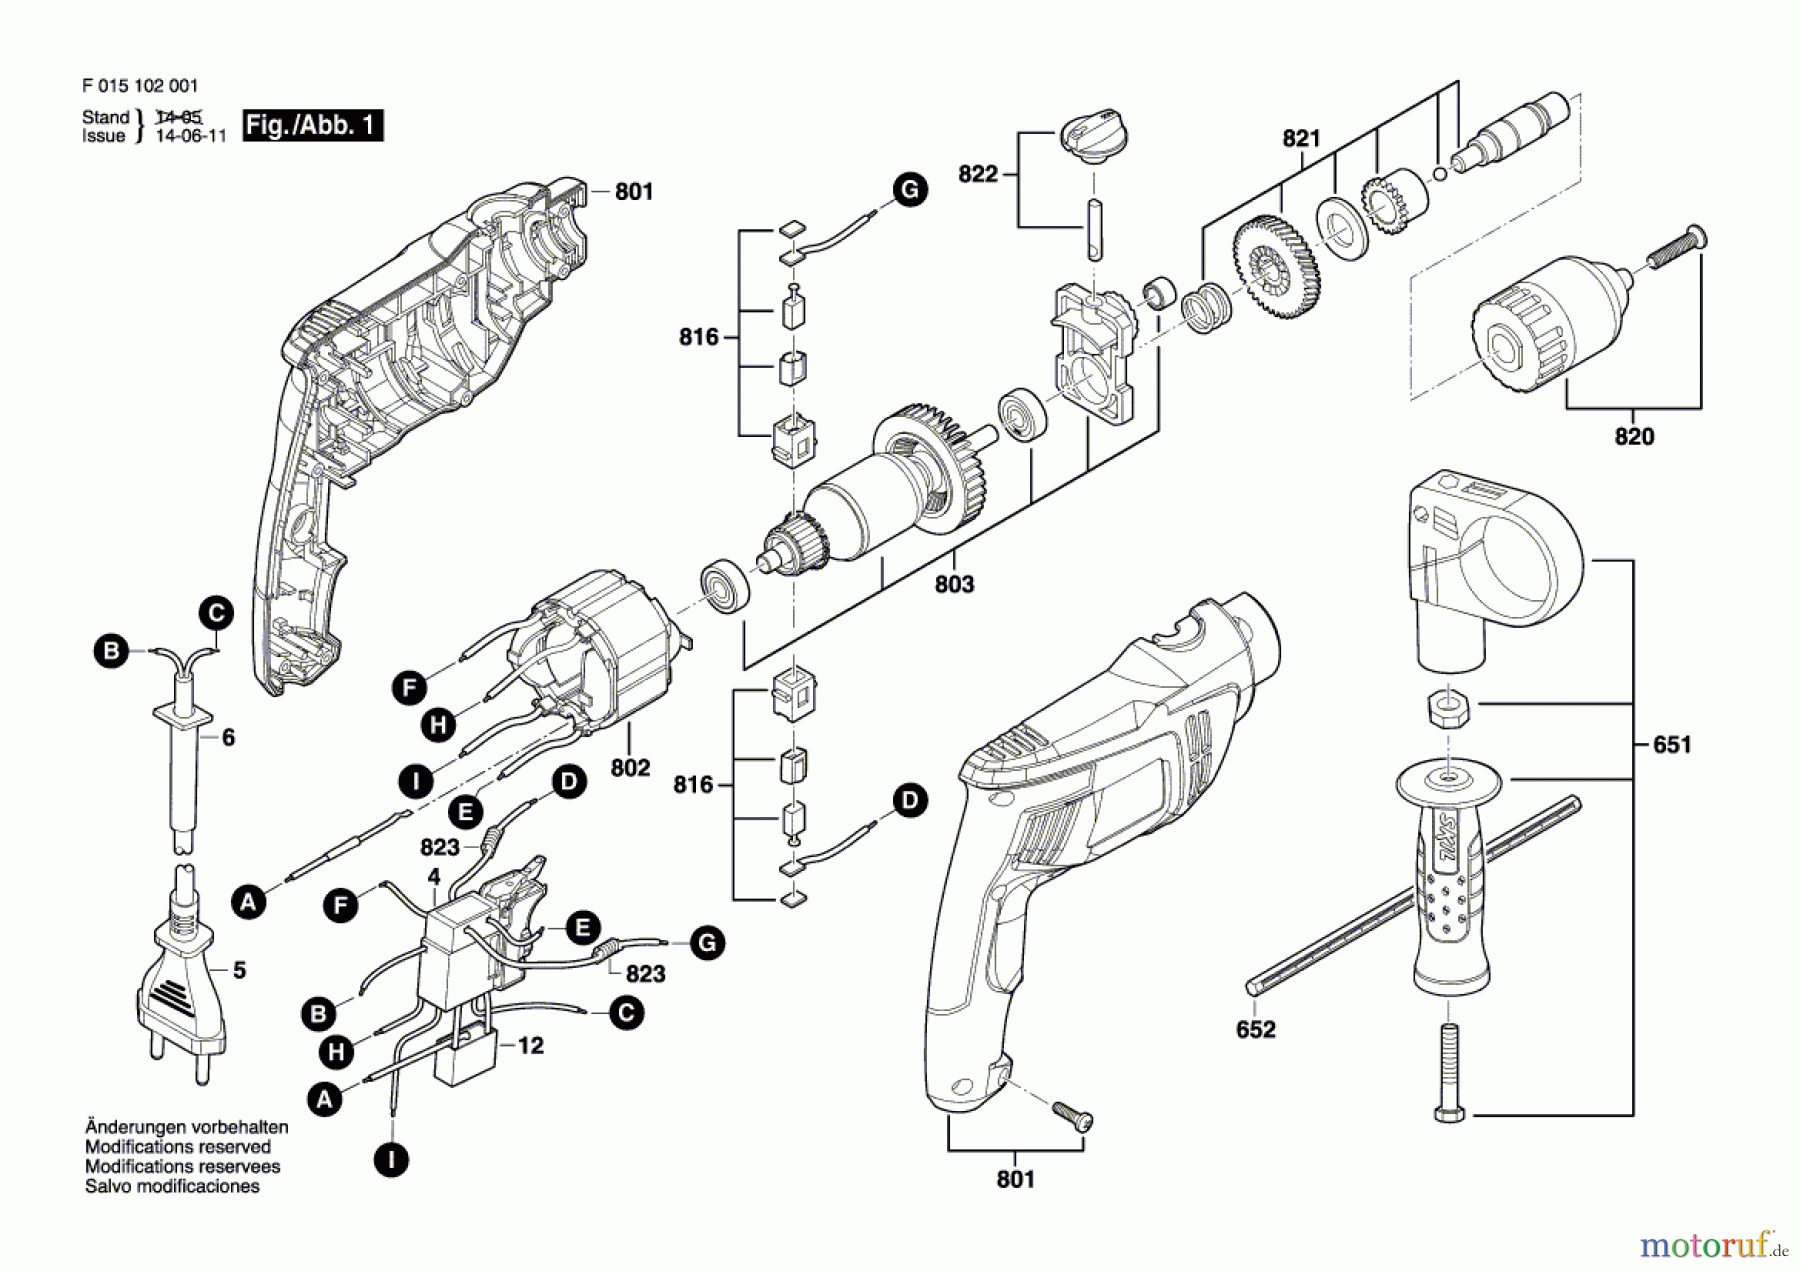  Bosch Werkzeug Schlagbohrmaschine 1020 Seite 1